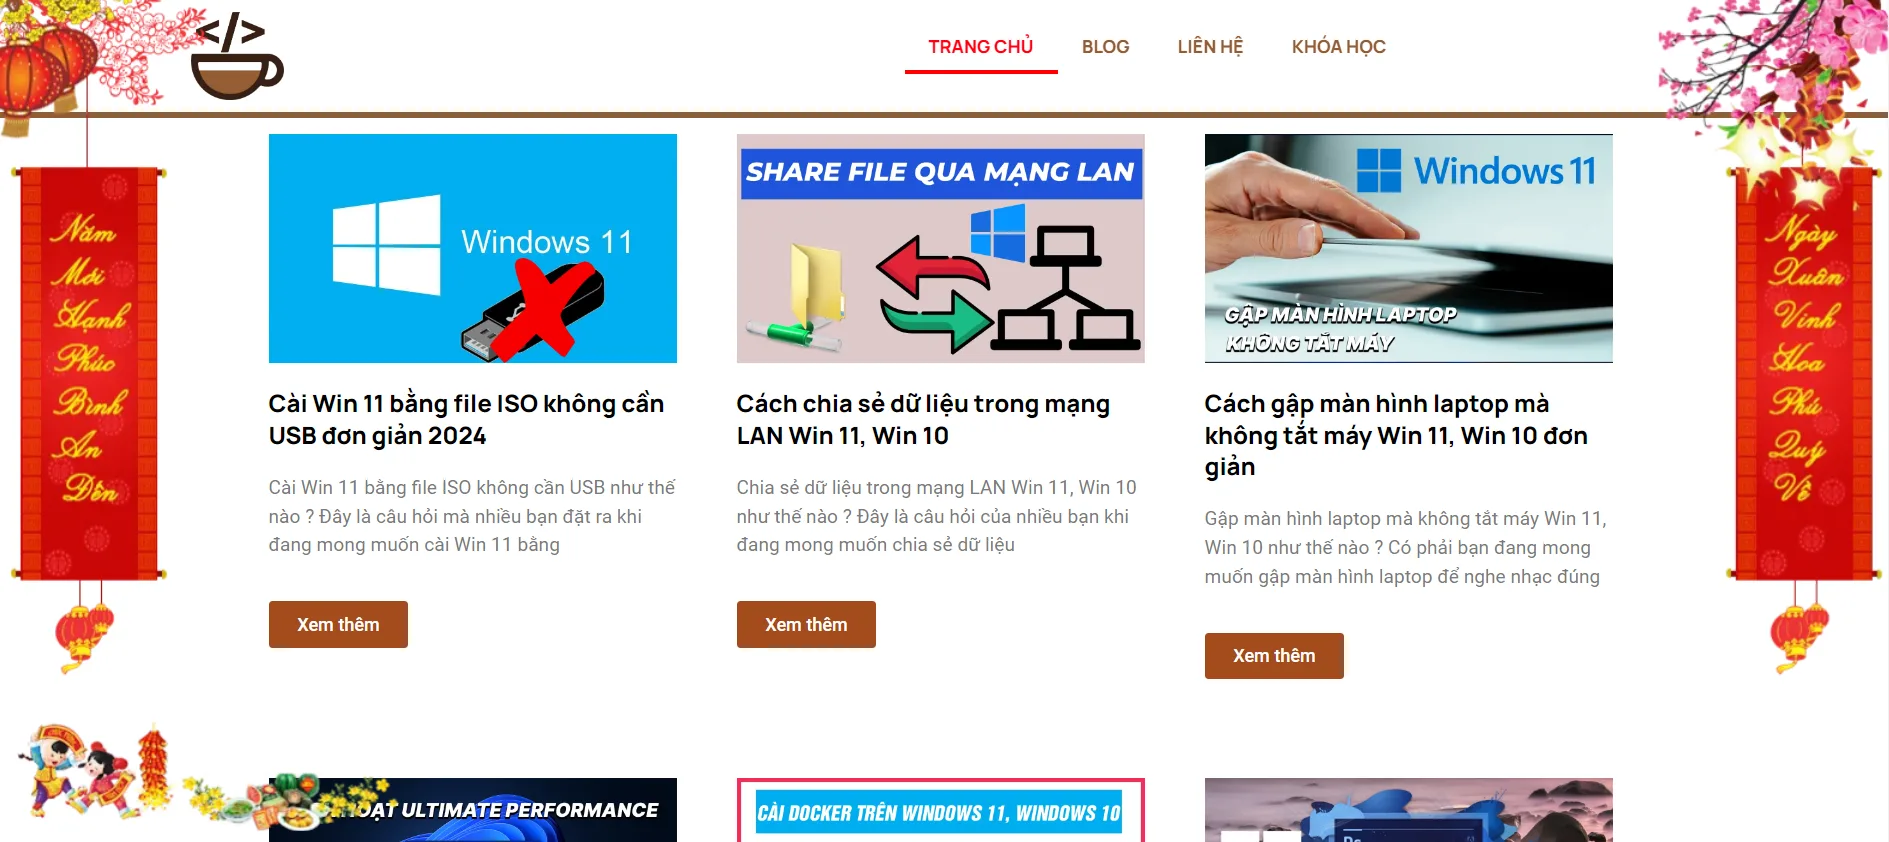 Thêm Code Trang Trí Tết Cho Website Thành Công